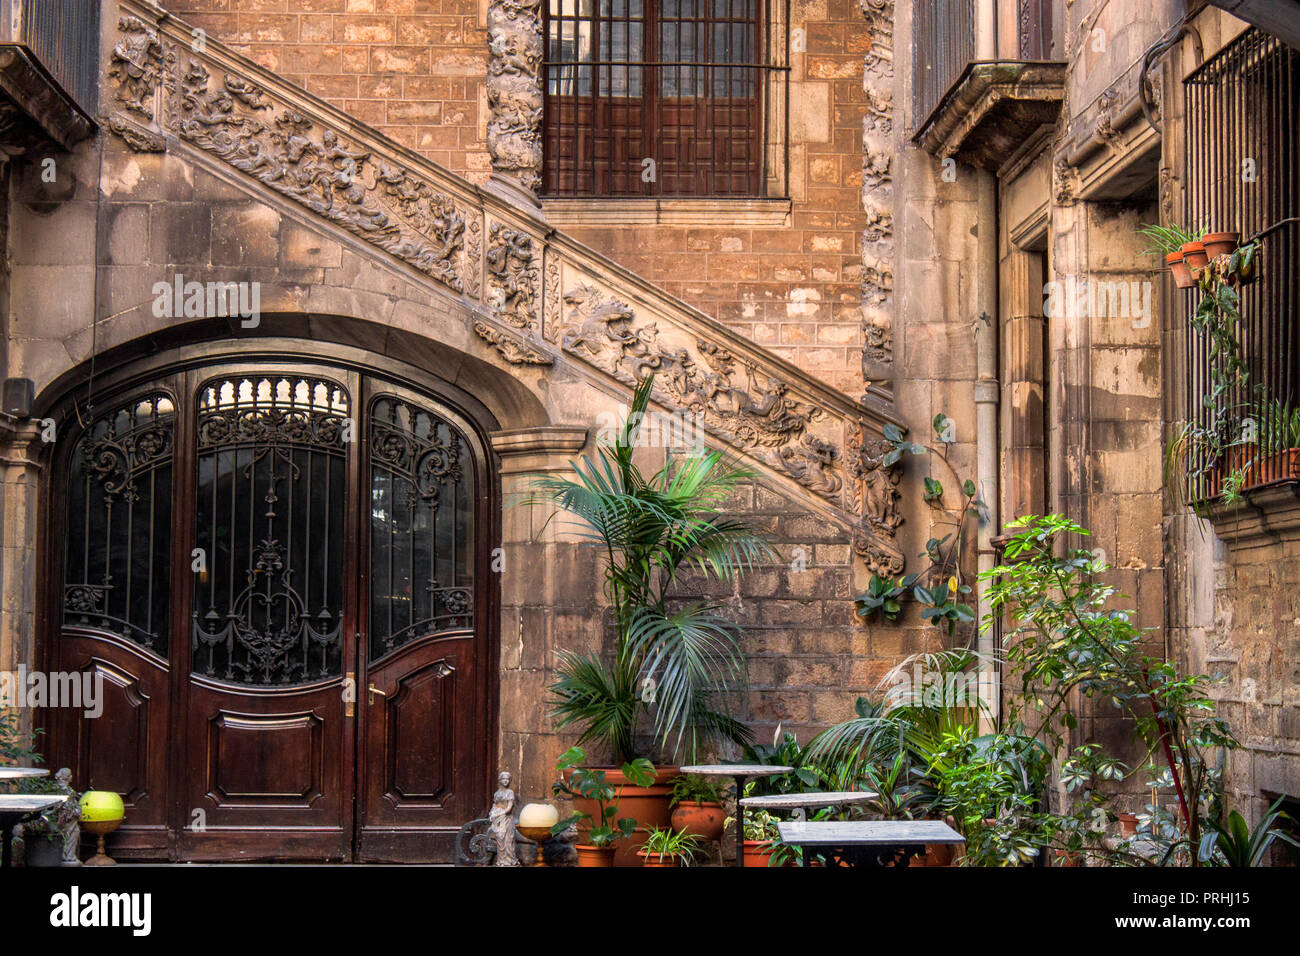 Cour intérieure médiévale dans le quartier gothique de Barcelone, Catalogne, Espagne, Europe. Escaliers en pierre historique, mur et beaux modèles anciens. Banque D'Images